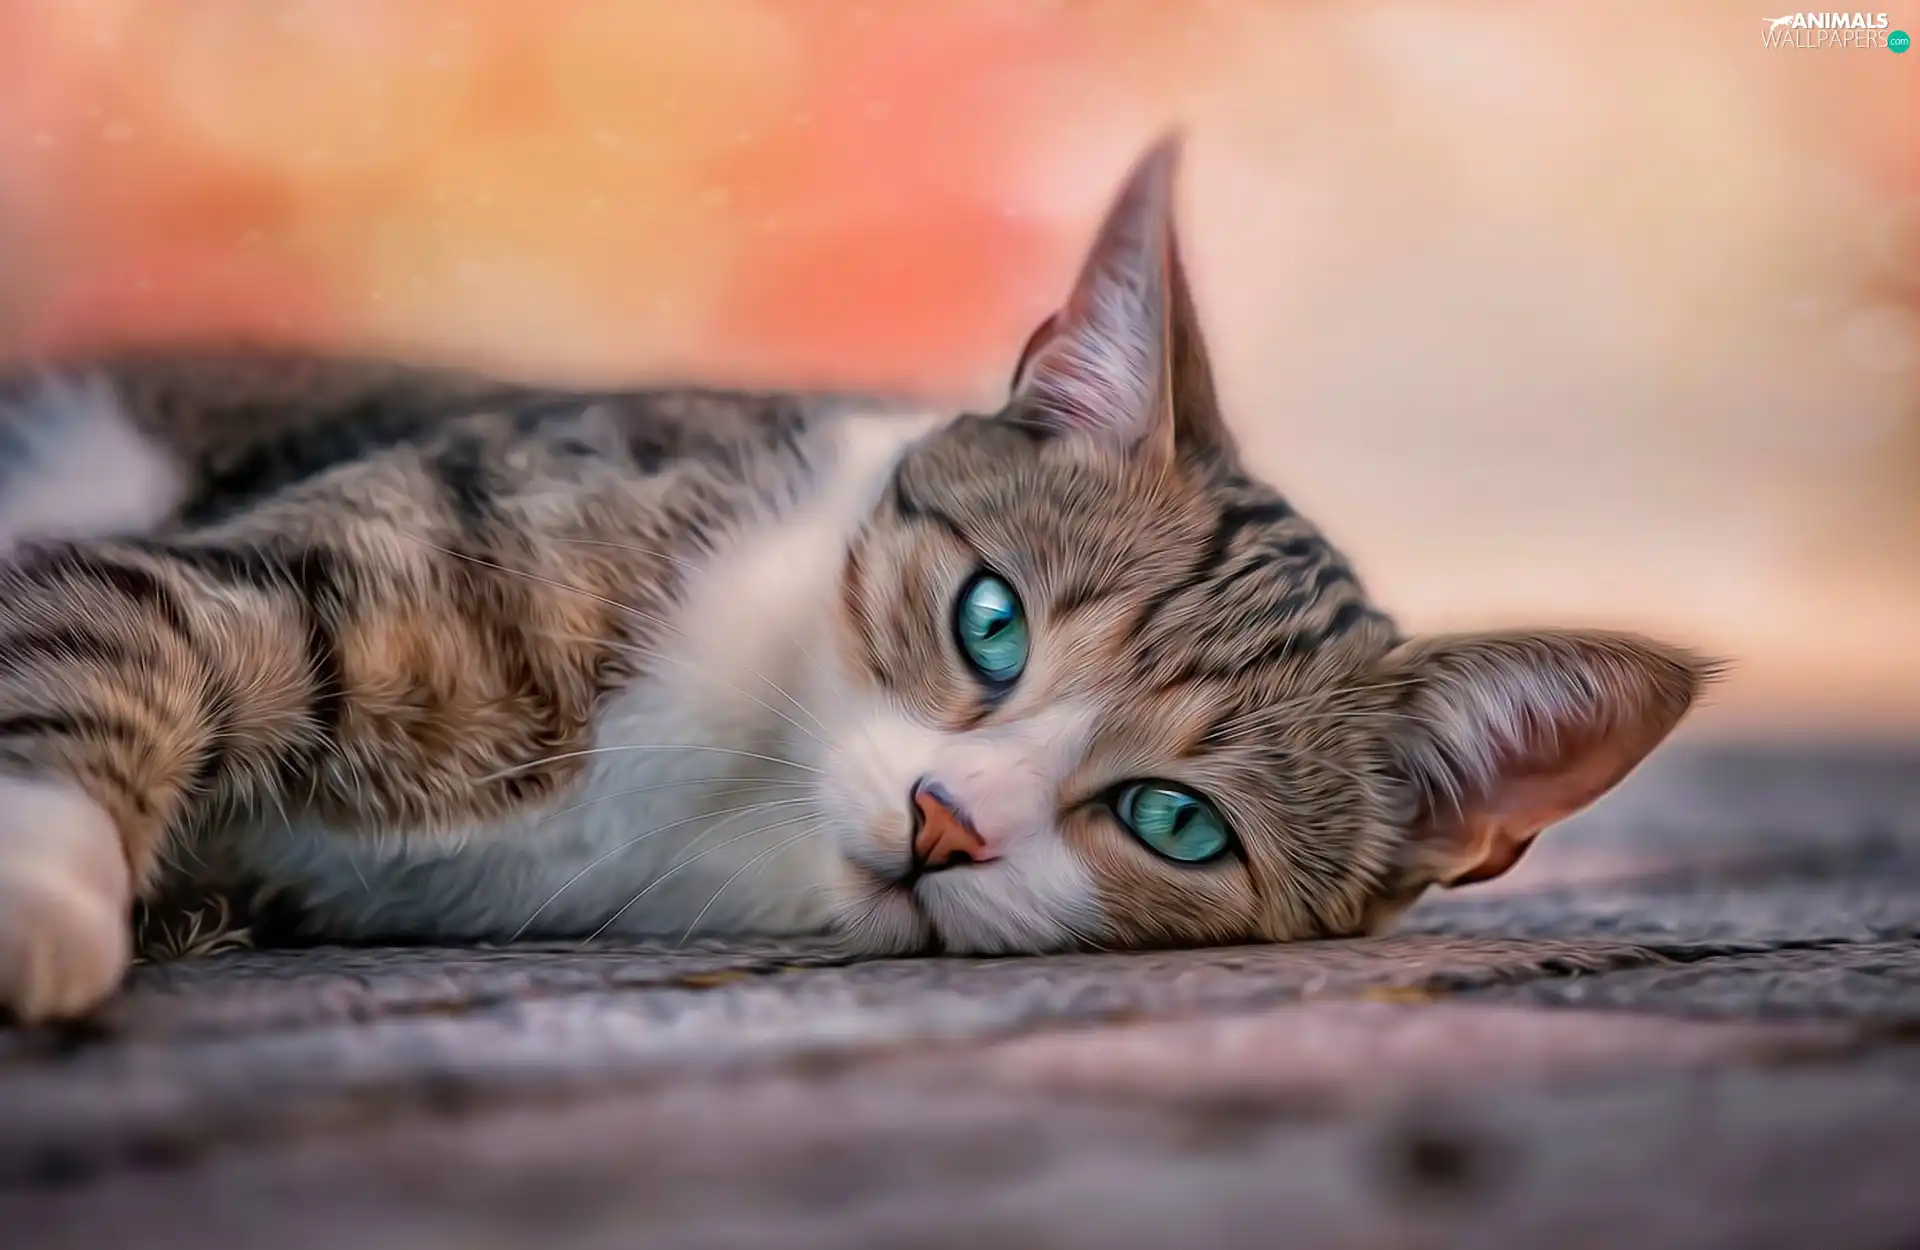 lying, turquoise, Eyes, cat